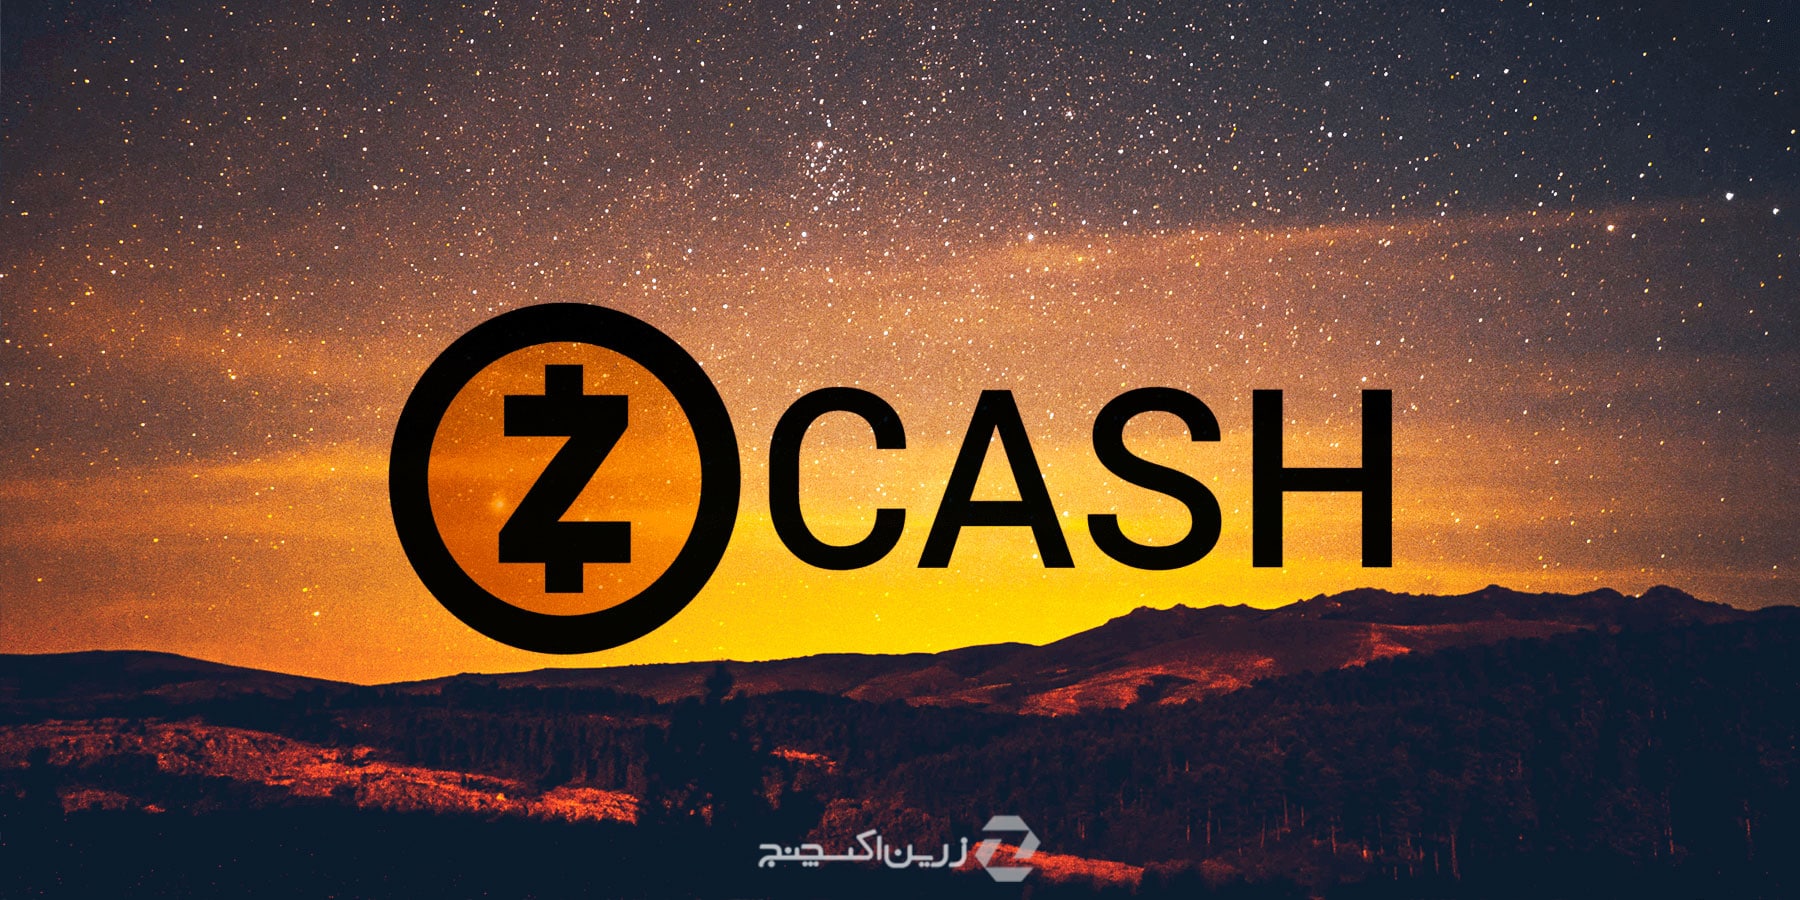 ارز دیجیتال زی‌کش (Zcash) چیست؟